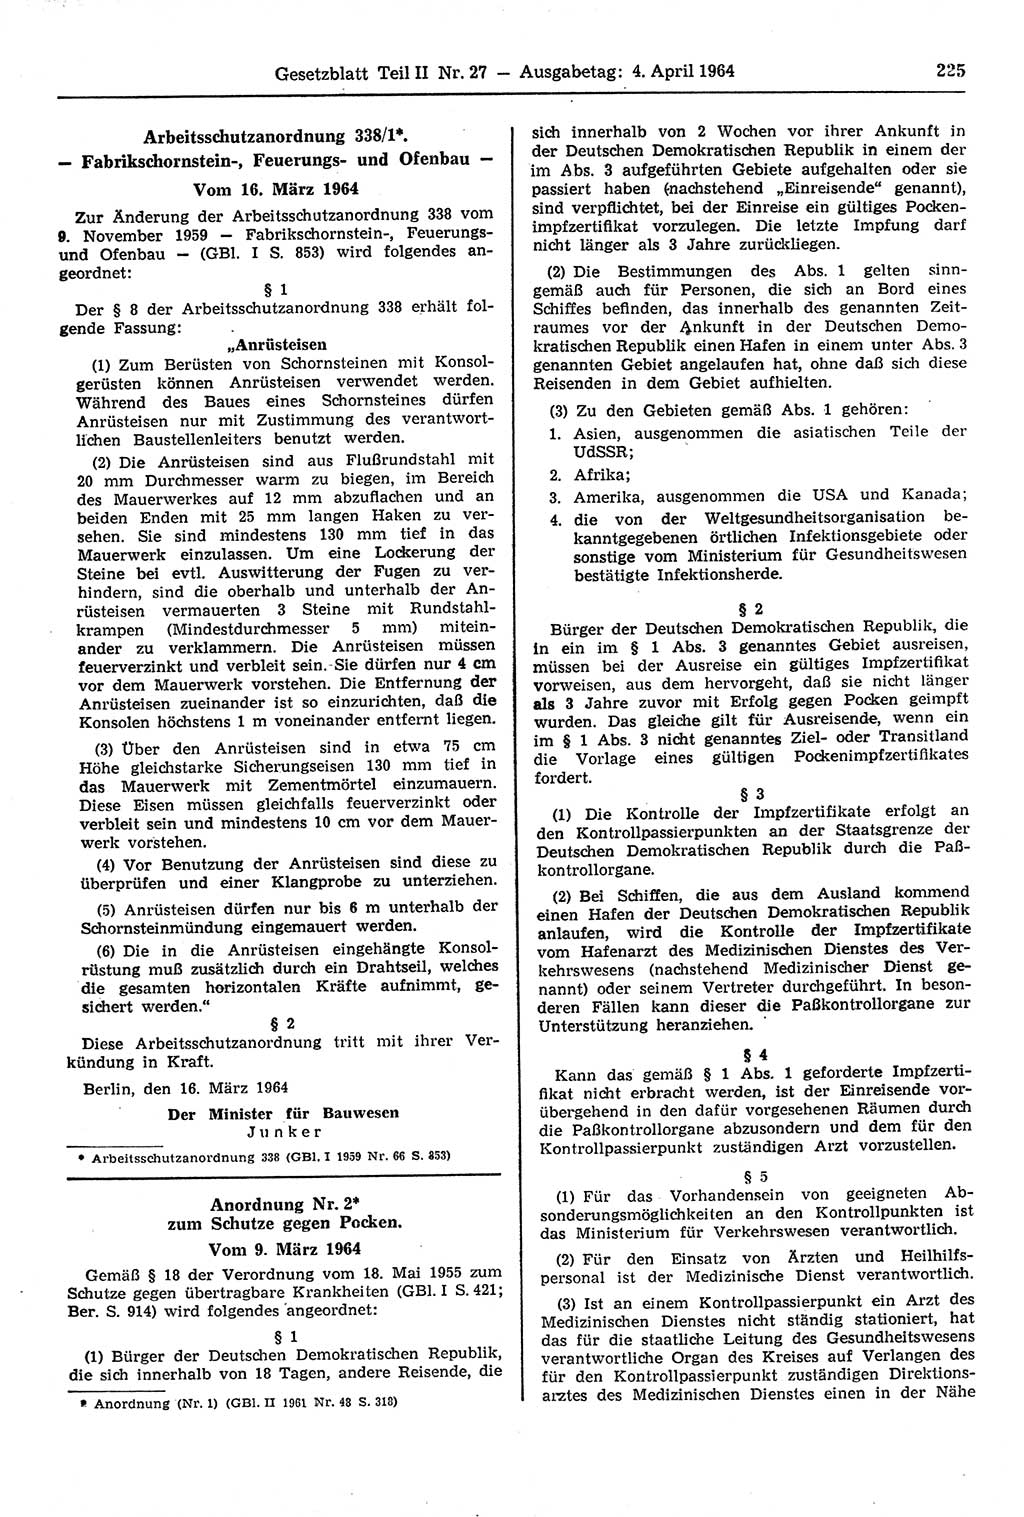 Gesetzblatt (GBl.) der Deutschen Demokratischen Republik (DDR) Teil ⅠⅠ 1964, Seite 225 (GBl. DDR ⅠⅠ 1964, S. 225)